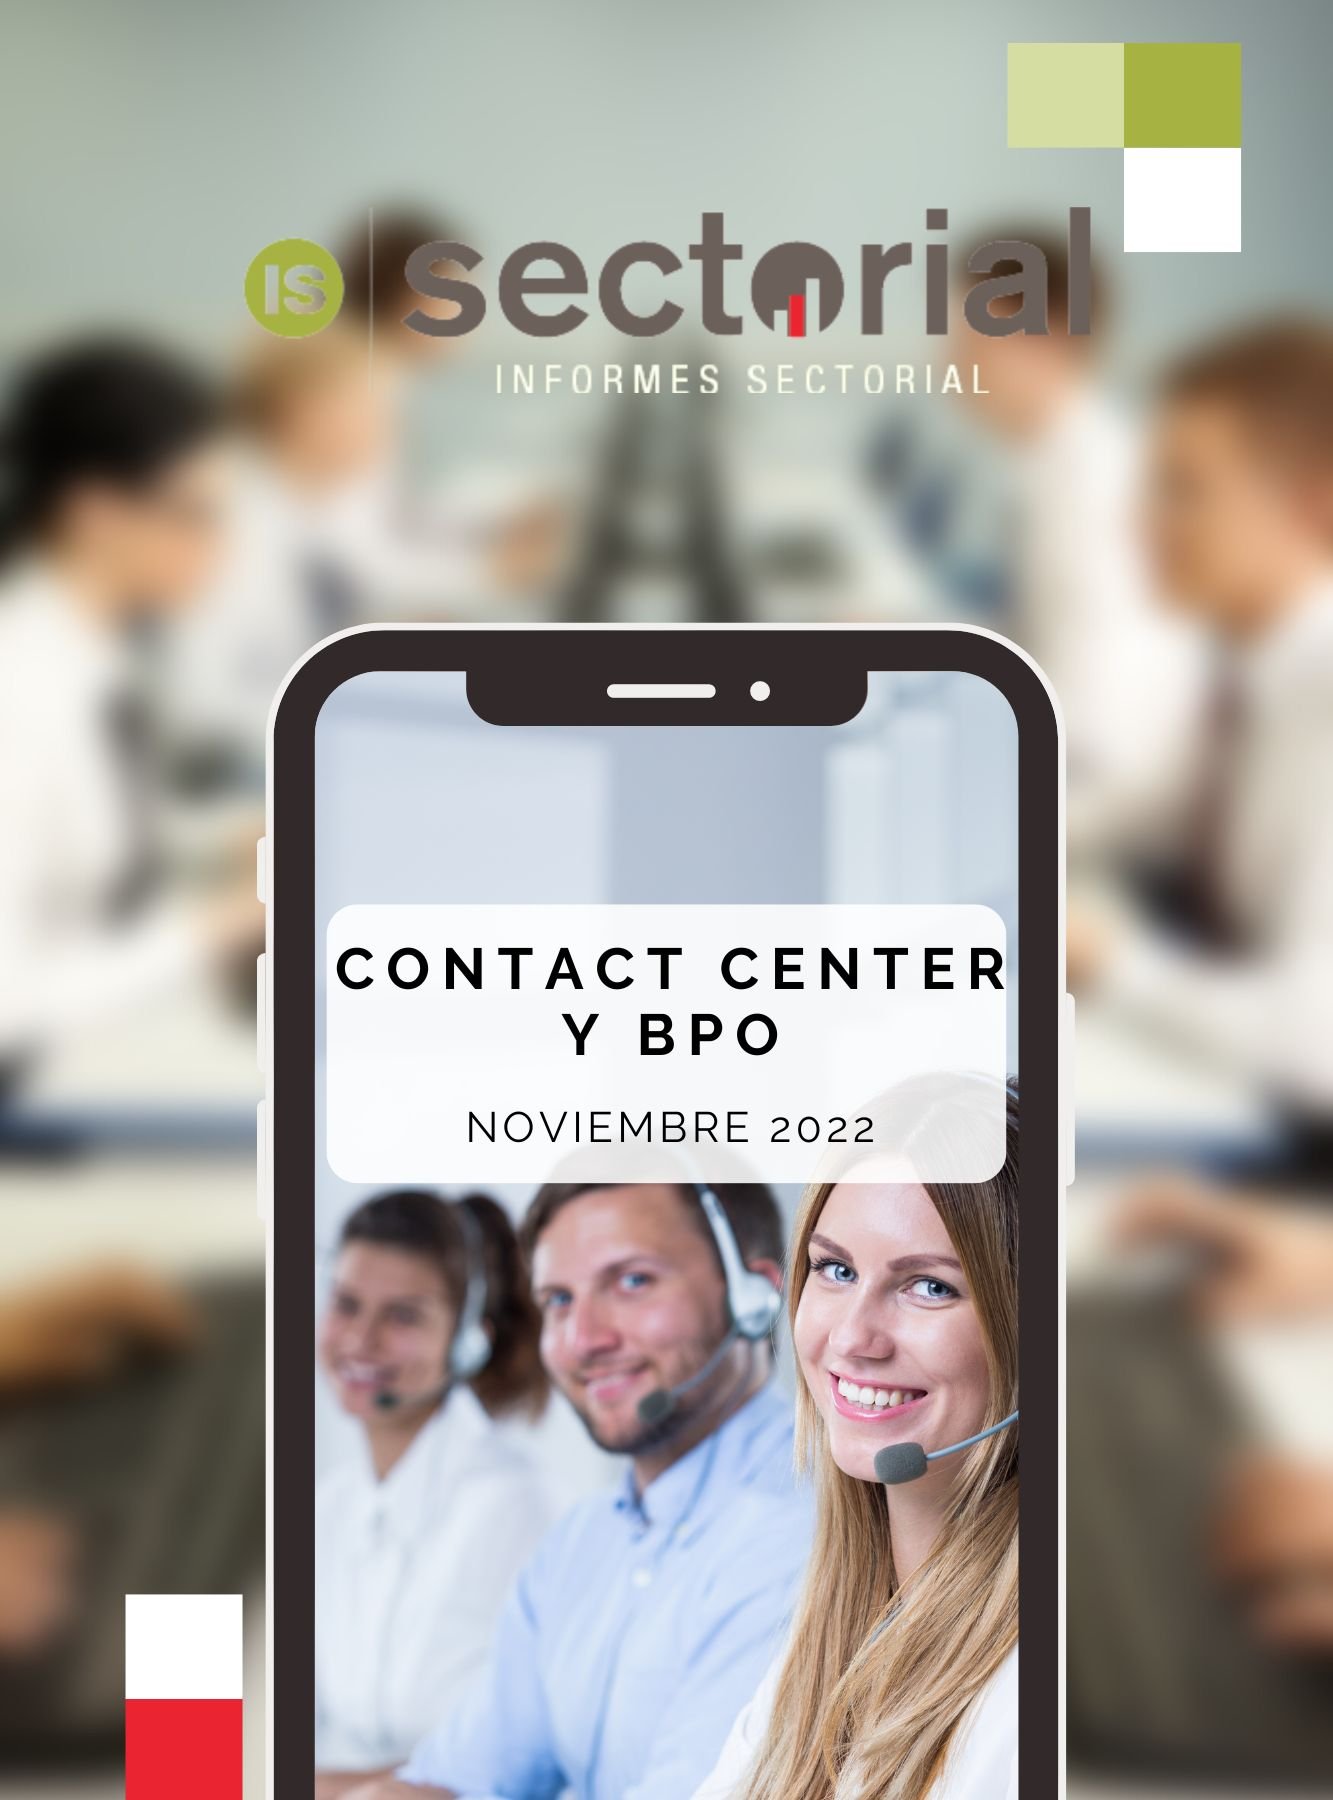 Contact Center y BPO